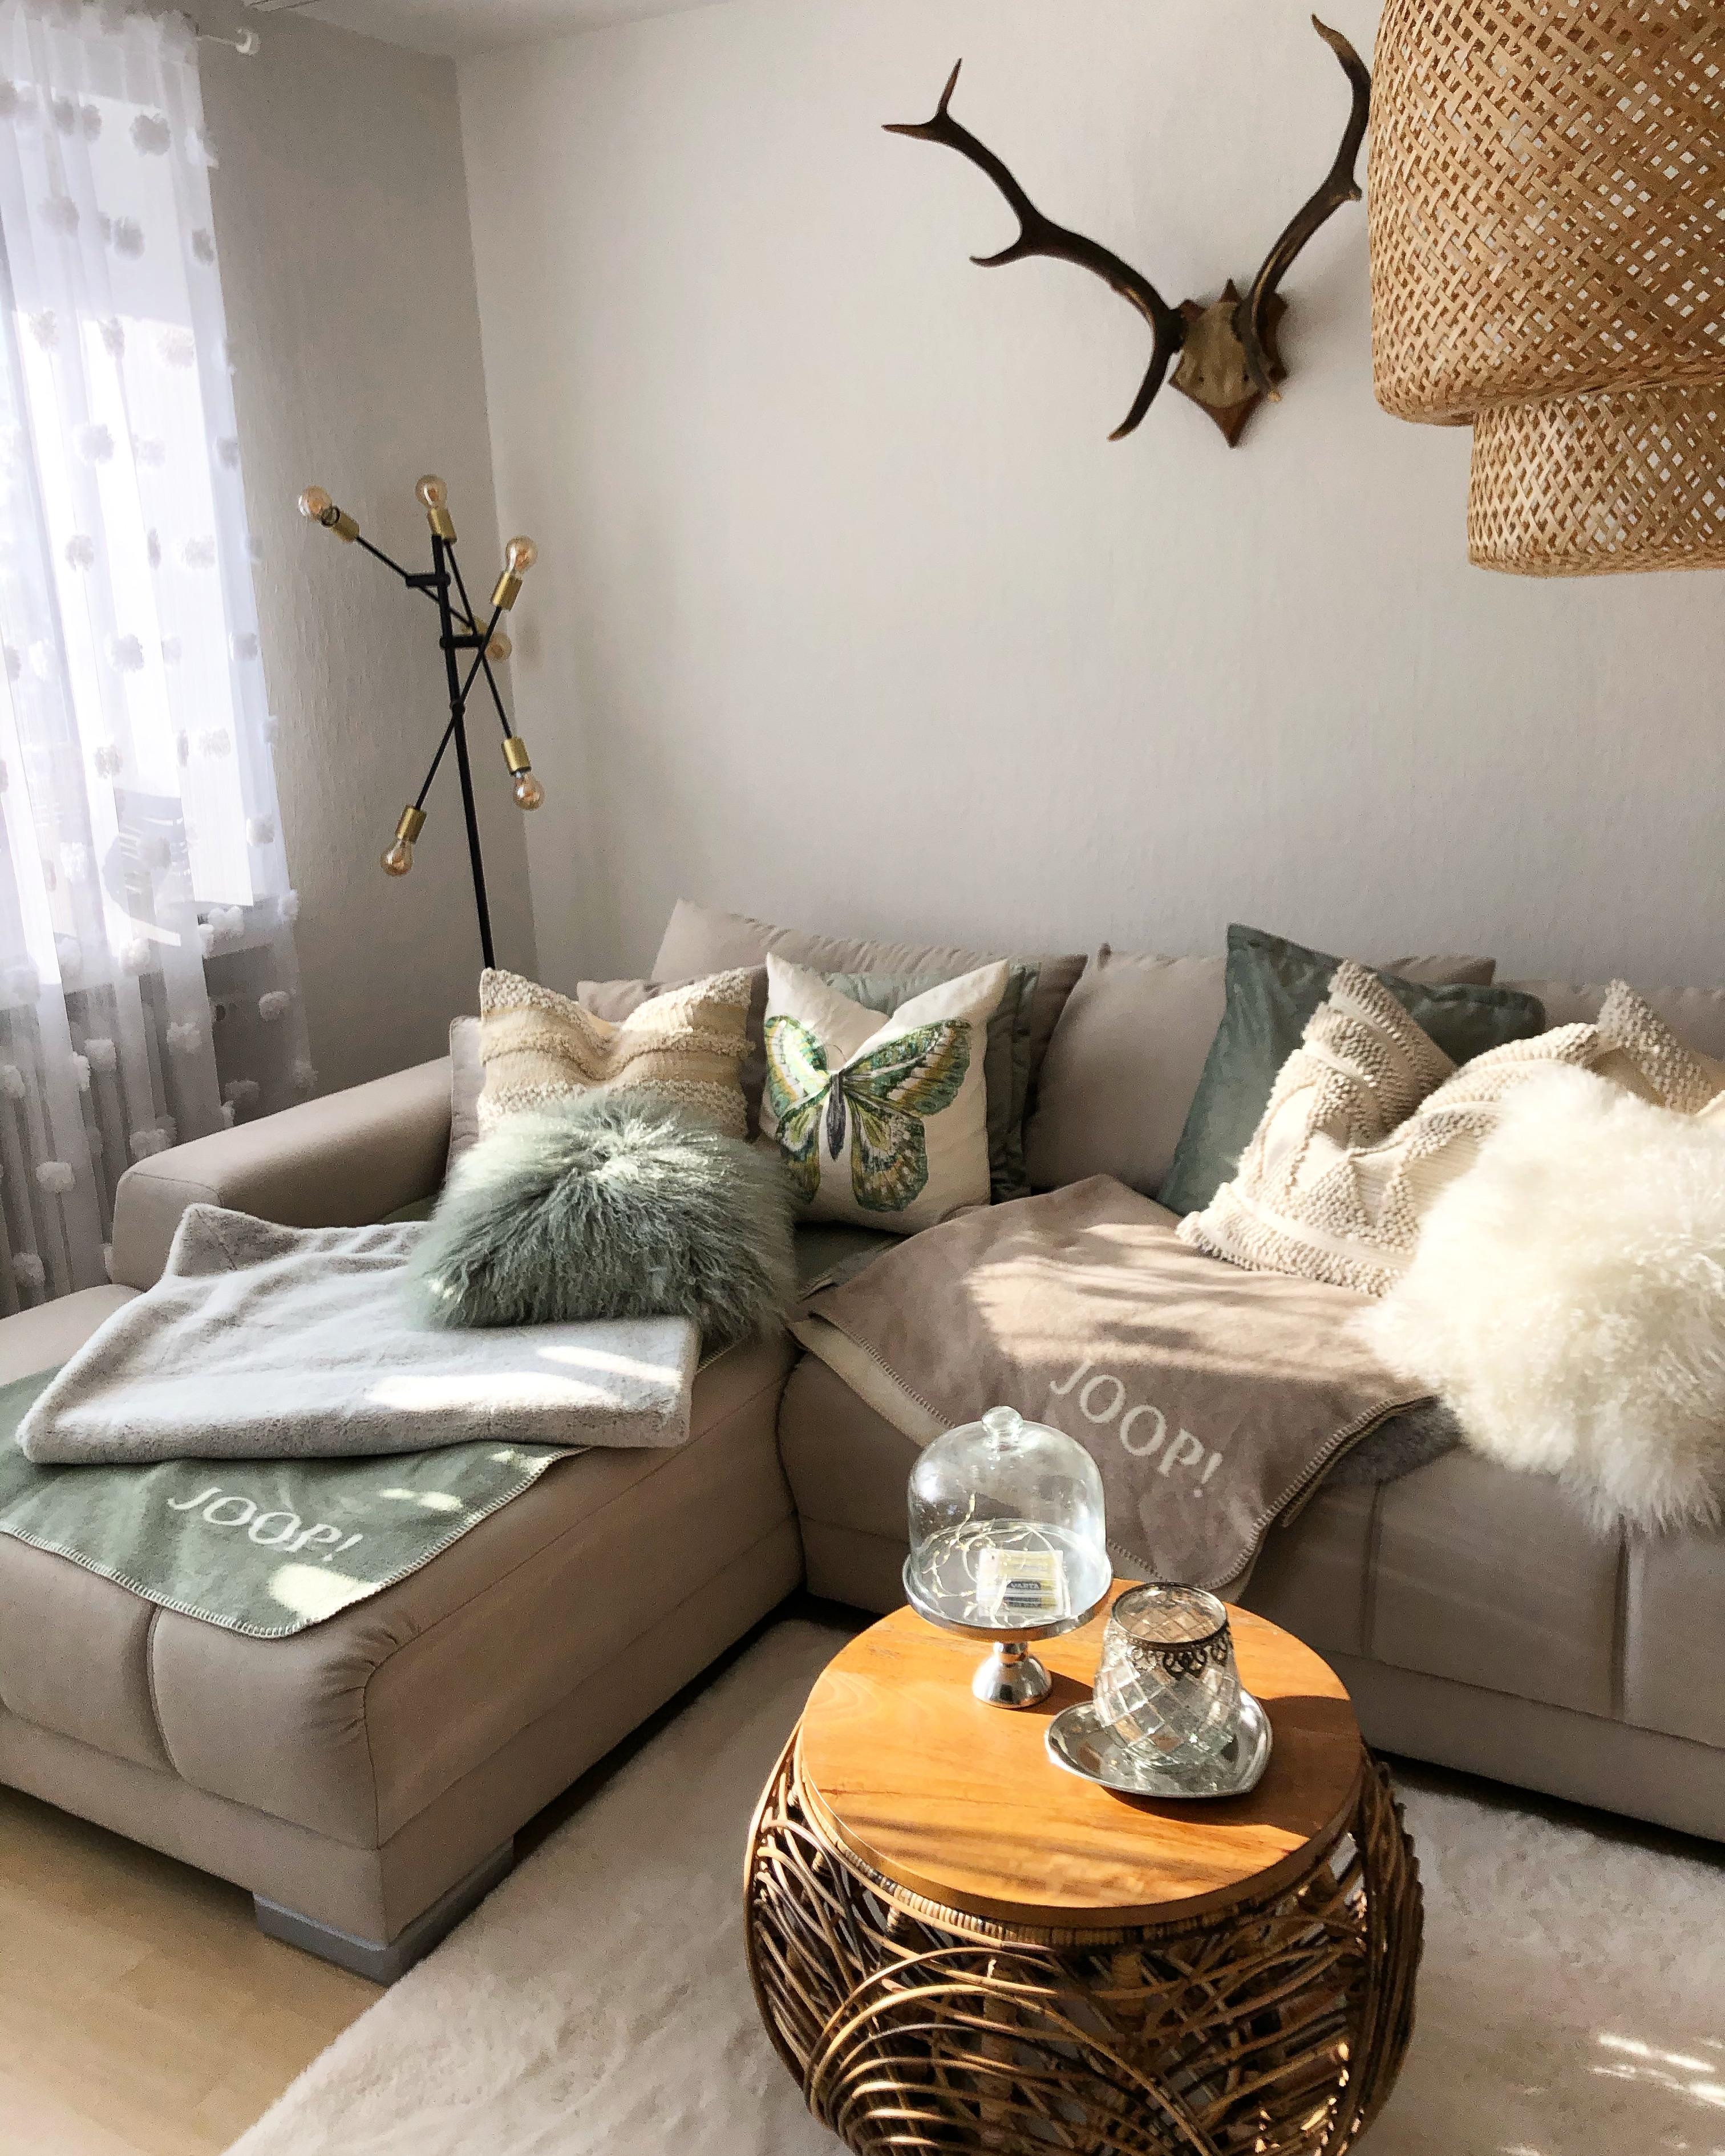 Lieblingsraum 🦌 #wohnzimmer #livingroom #couchliebt #couchstyle #landhausstil #bohostyle #shabbychic